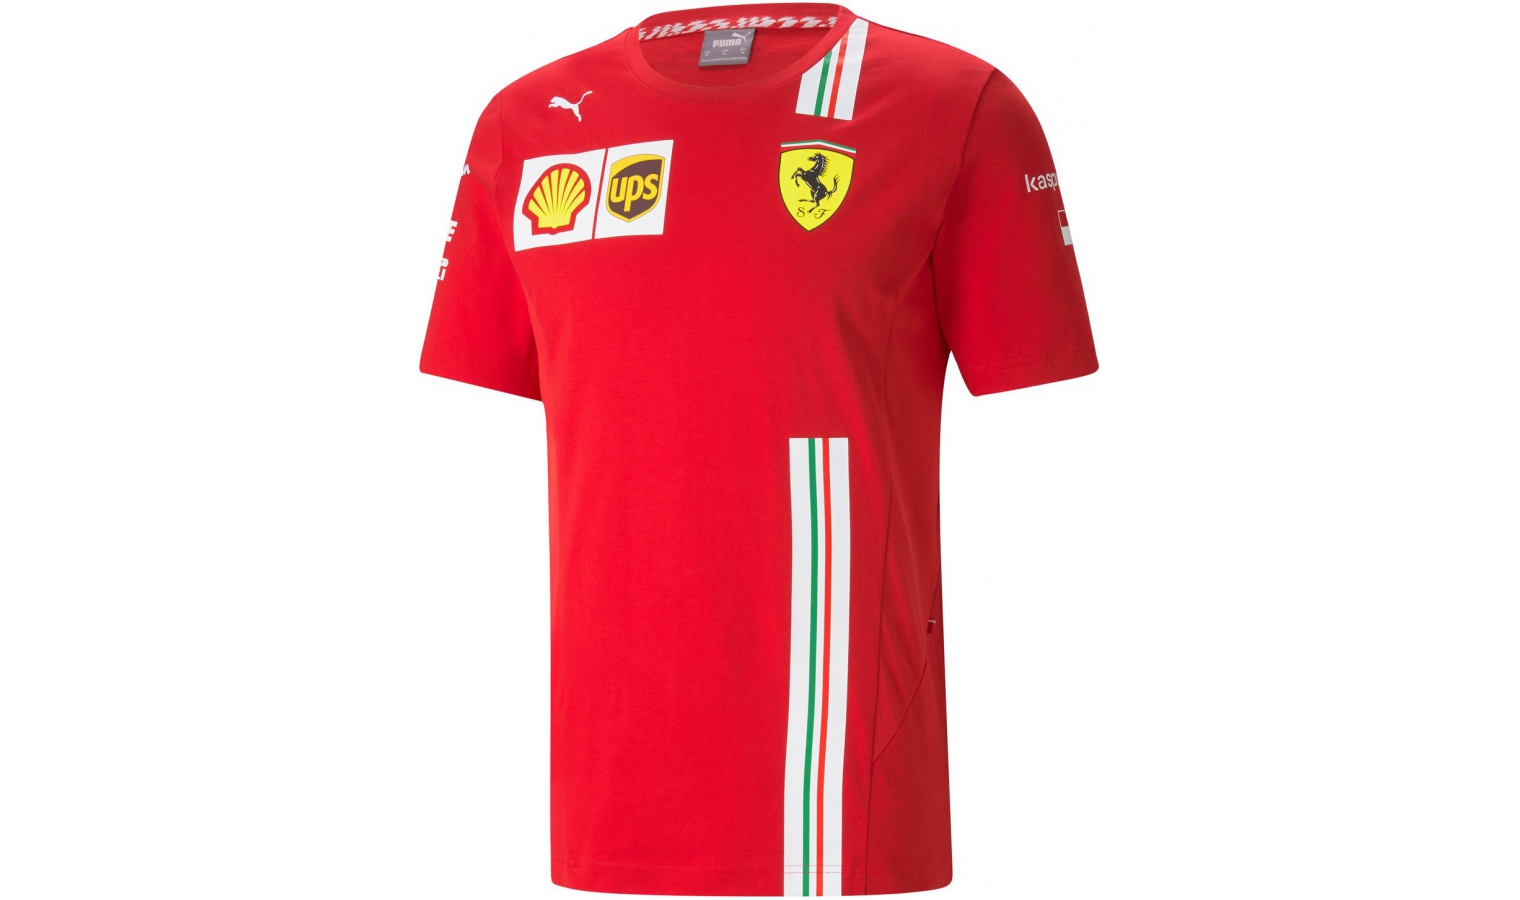 Scuderia Ferrari Leclerc Replica Team T-shirt